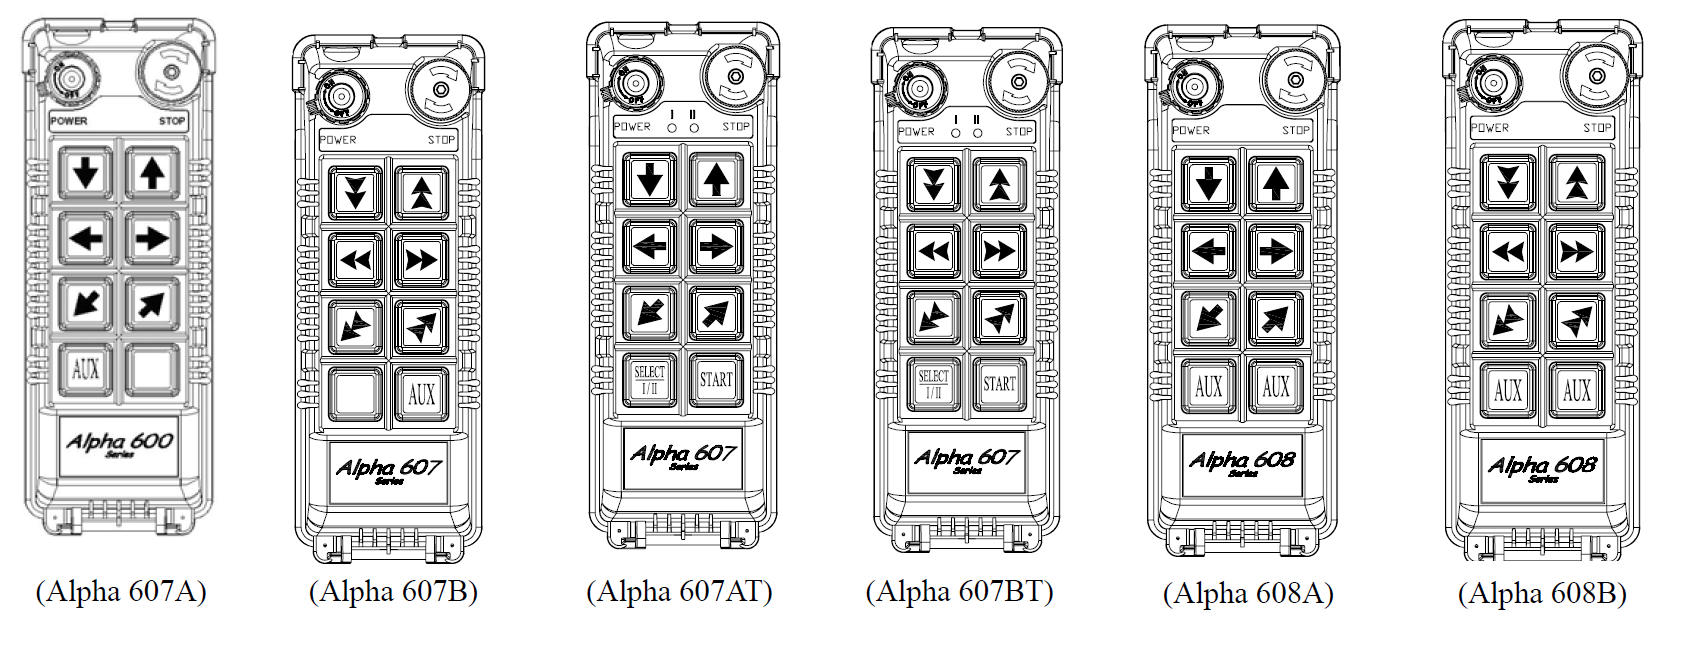 2.2 Modelos Alpha 607 & 608 1. Alpha 607ª (7) botões com simples estágio 2. Alpha 607B (6) botões com duplo estagio + (1) botão com um estagio 3.